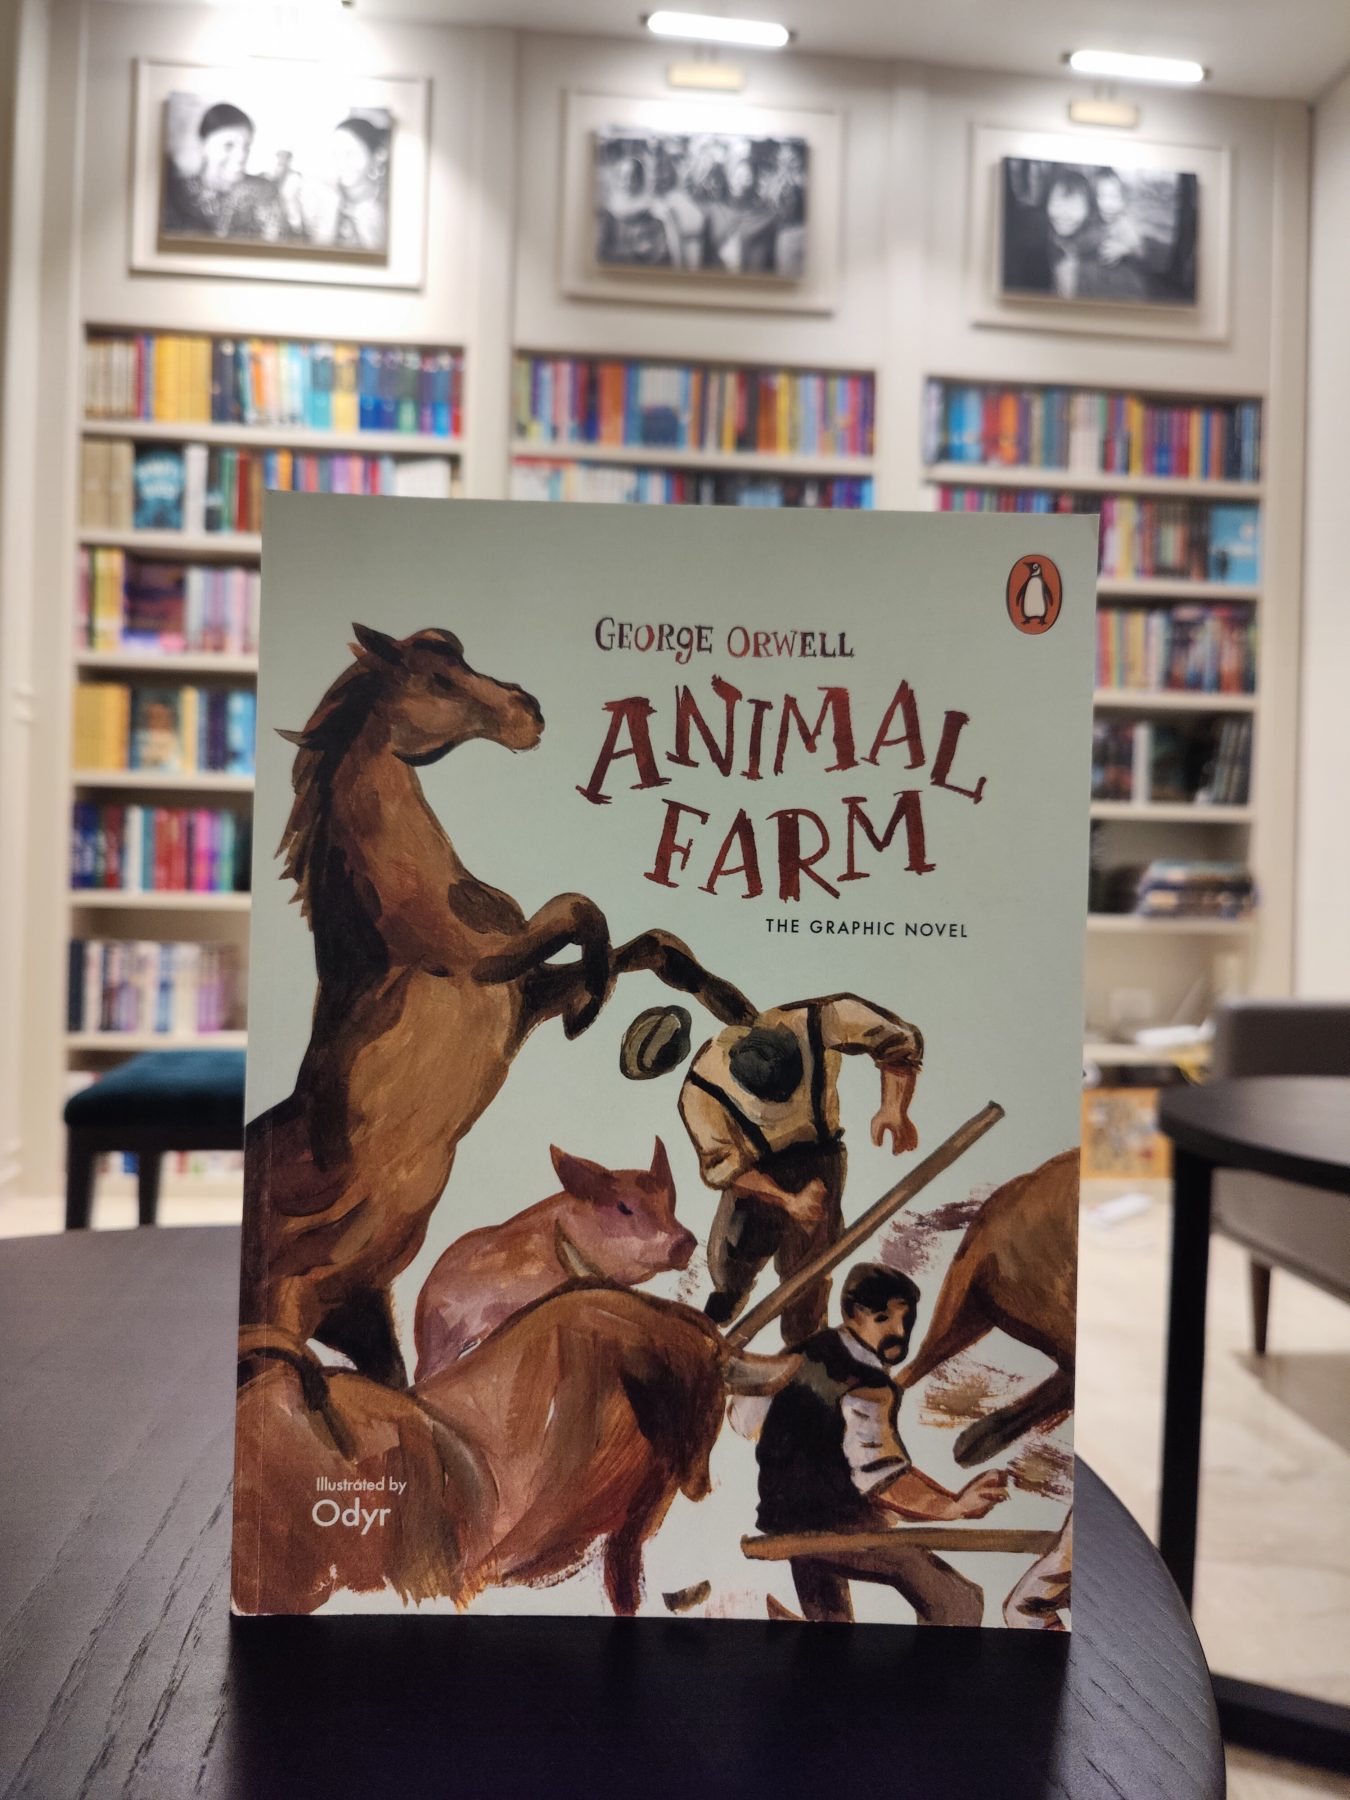 George Orwell’s Animal Farm, illustrated by Odyr